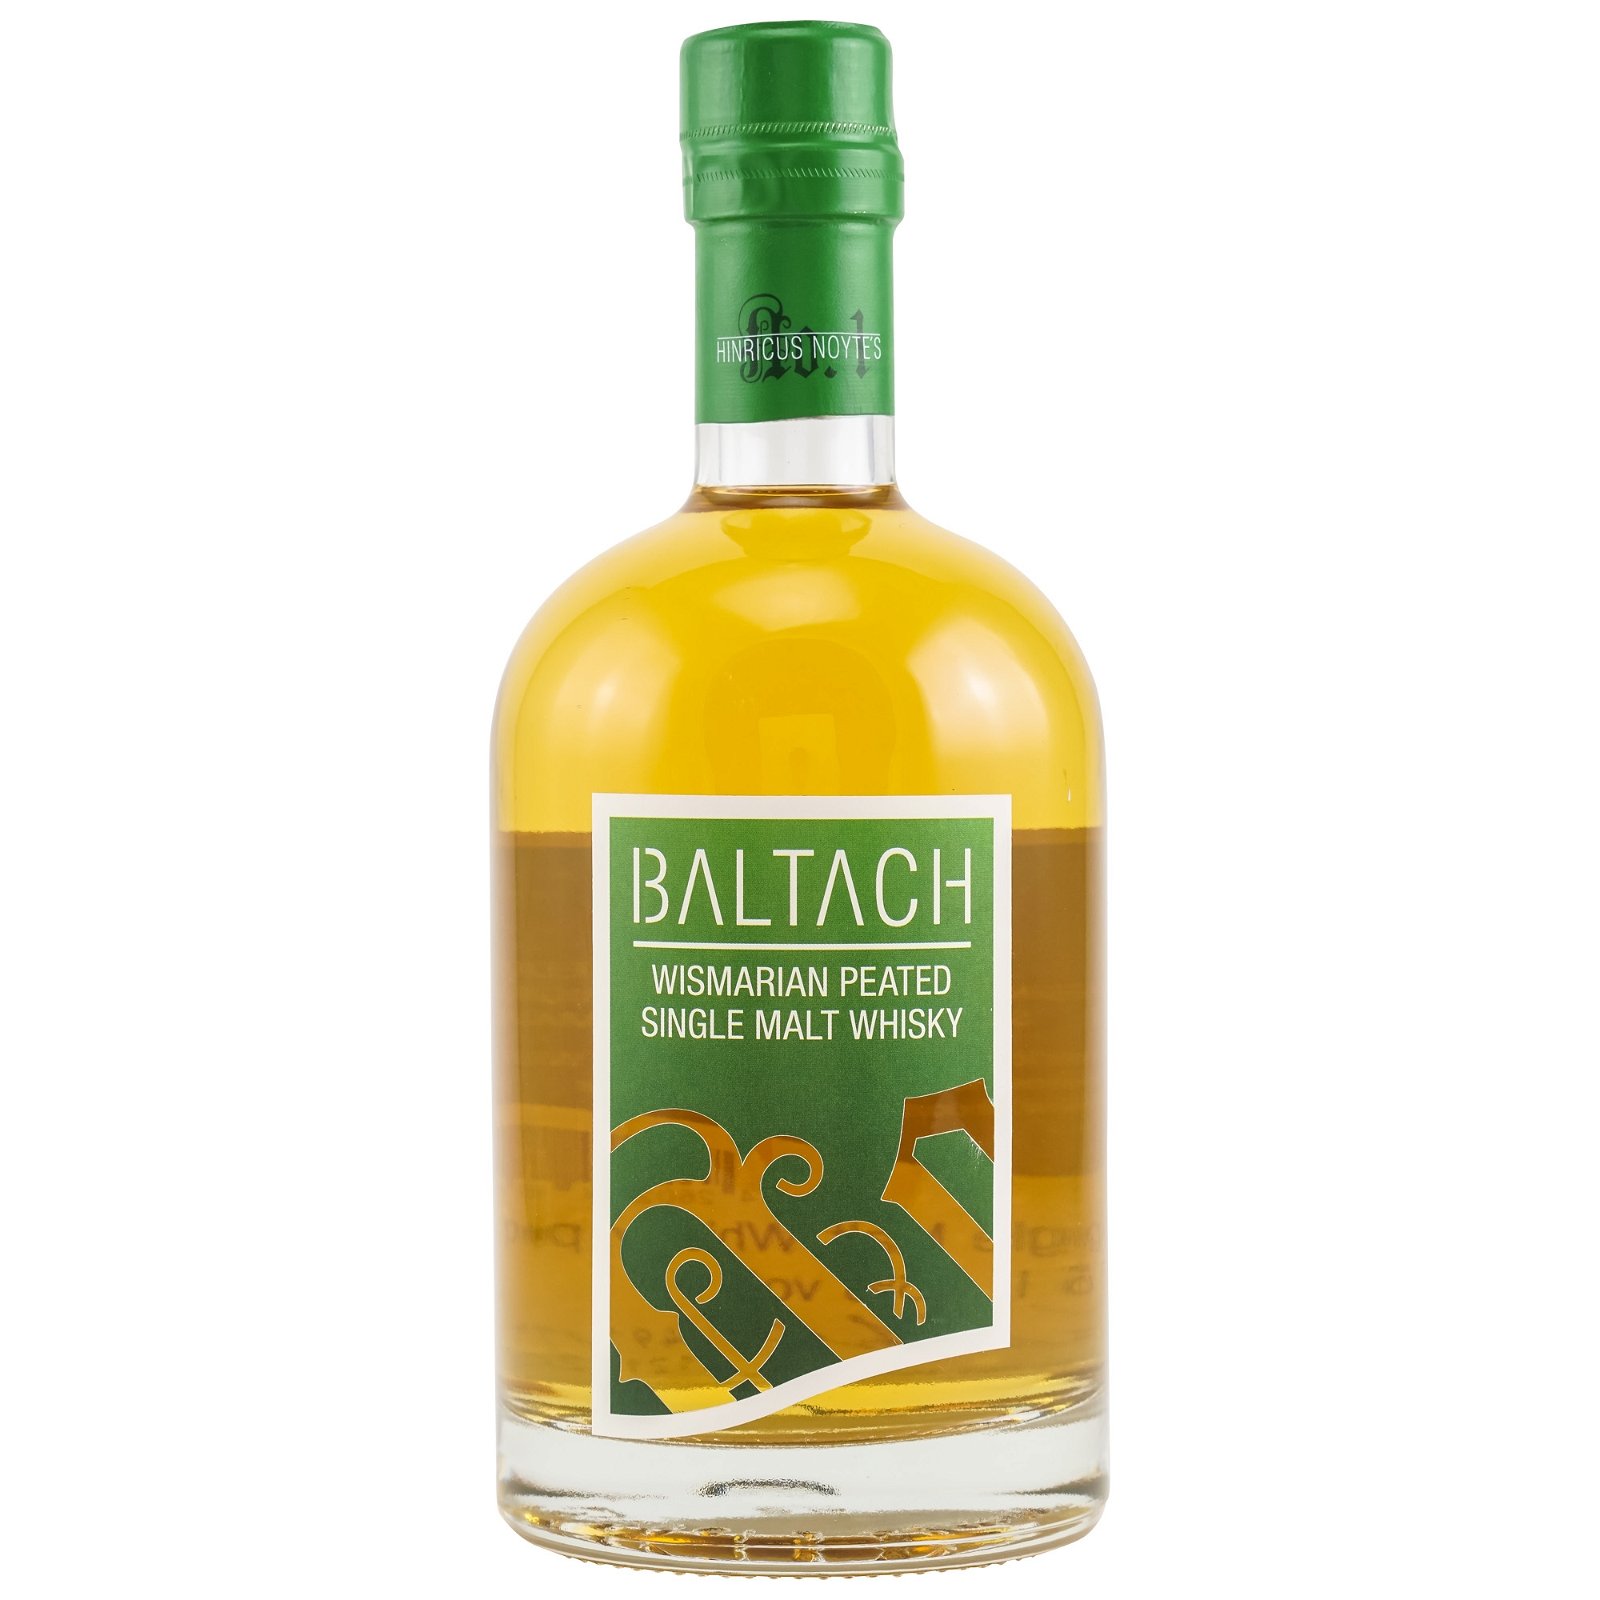 Baltach Wismarian Peated Single Malt Whisky